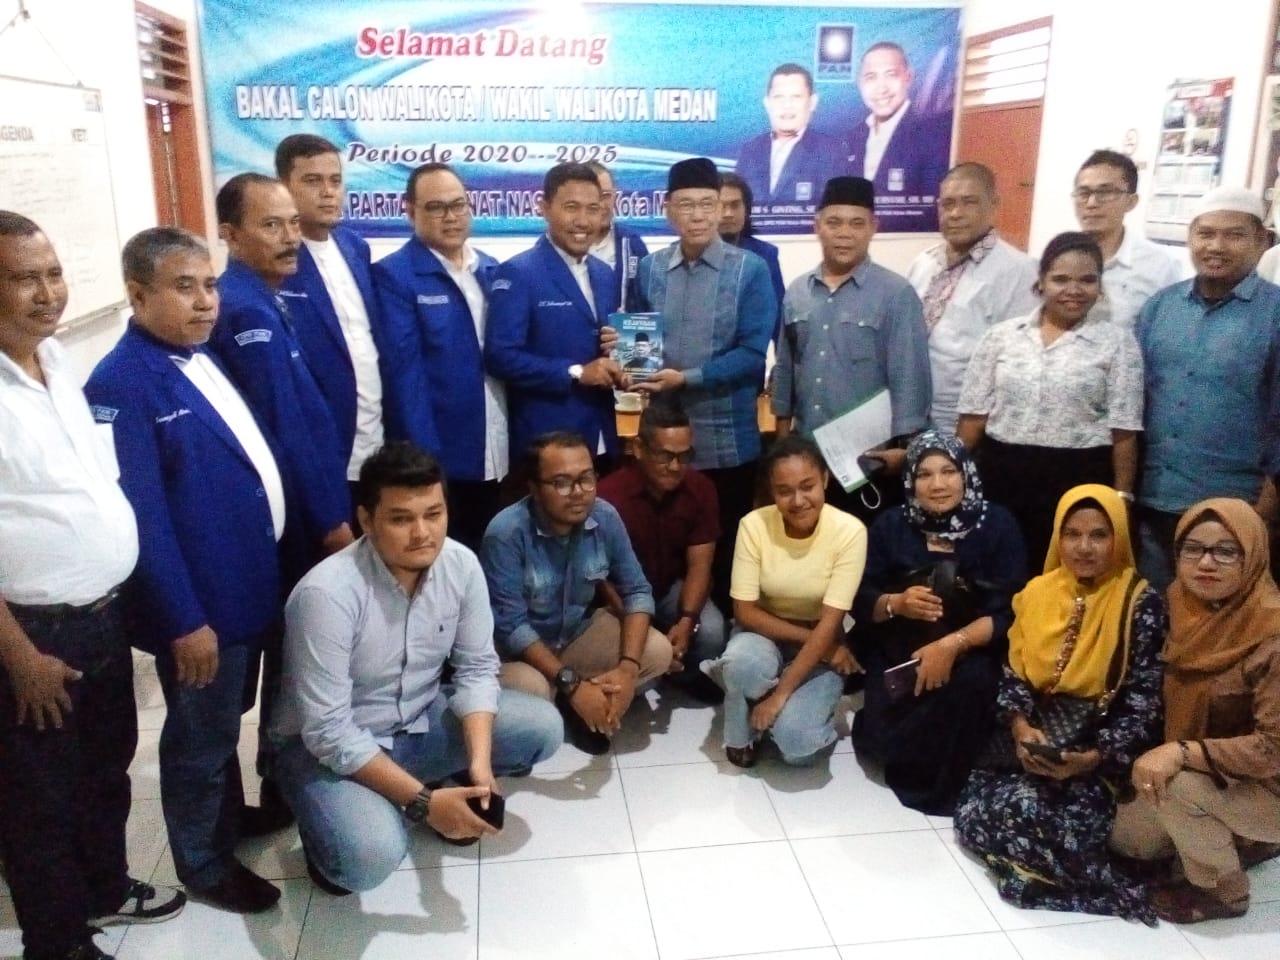 Dr H Sakhyan Asmara, MSP Kembalikan Formulir Pendaftaran DPC PAN kota Medan